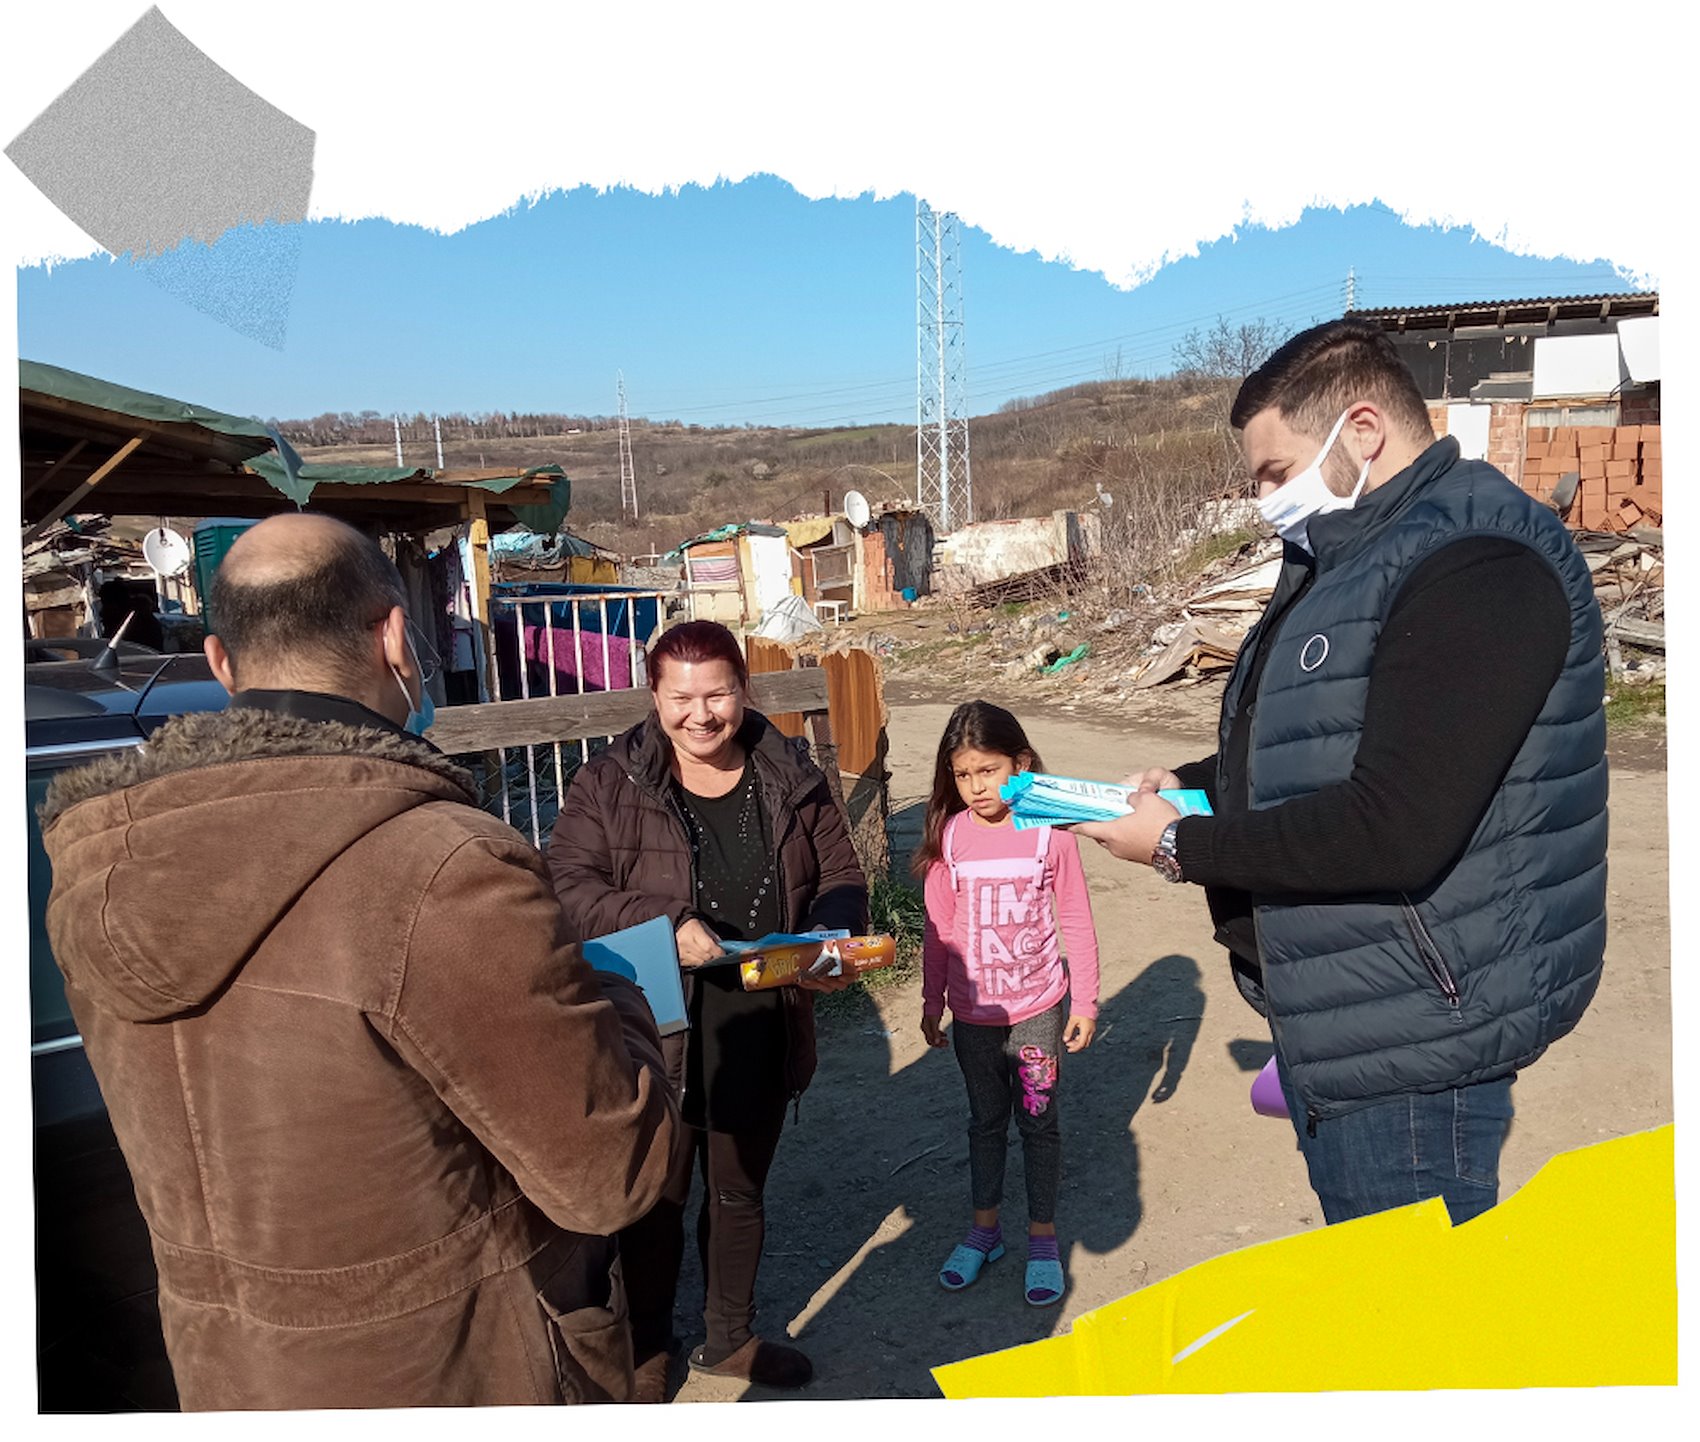 Voluntarios del PNUD brindan información sobre la vacuna COVID-19 a la comunidad romaní, marzo de 2021, Serbia.